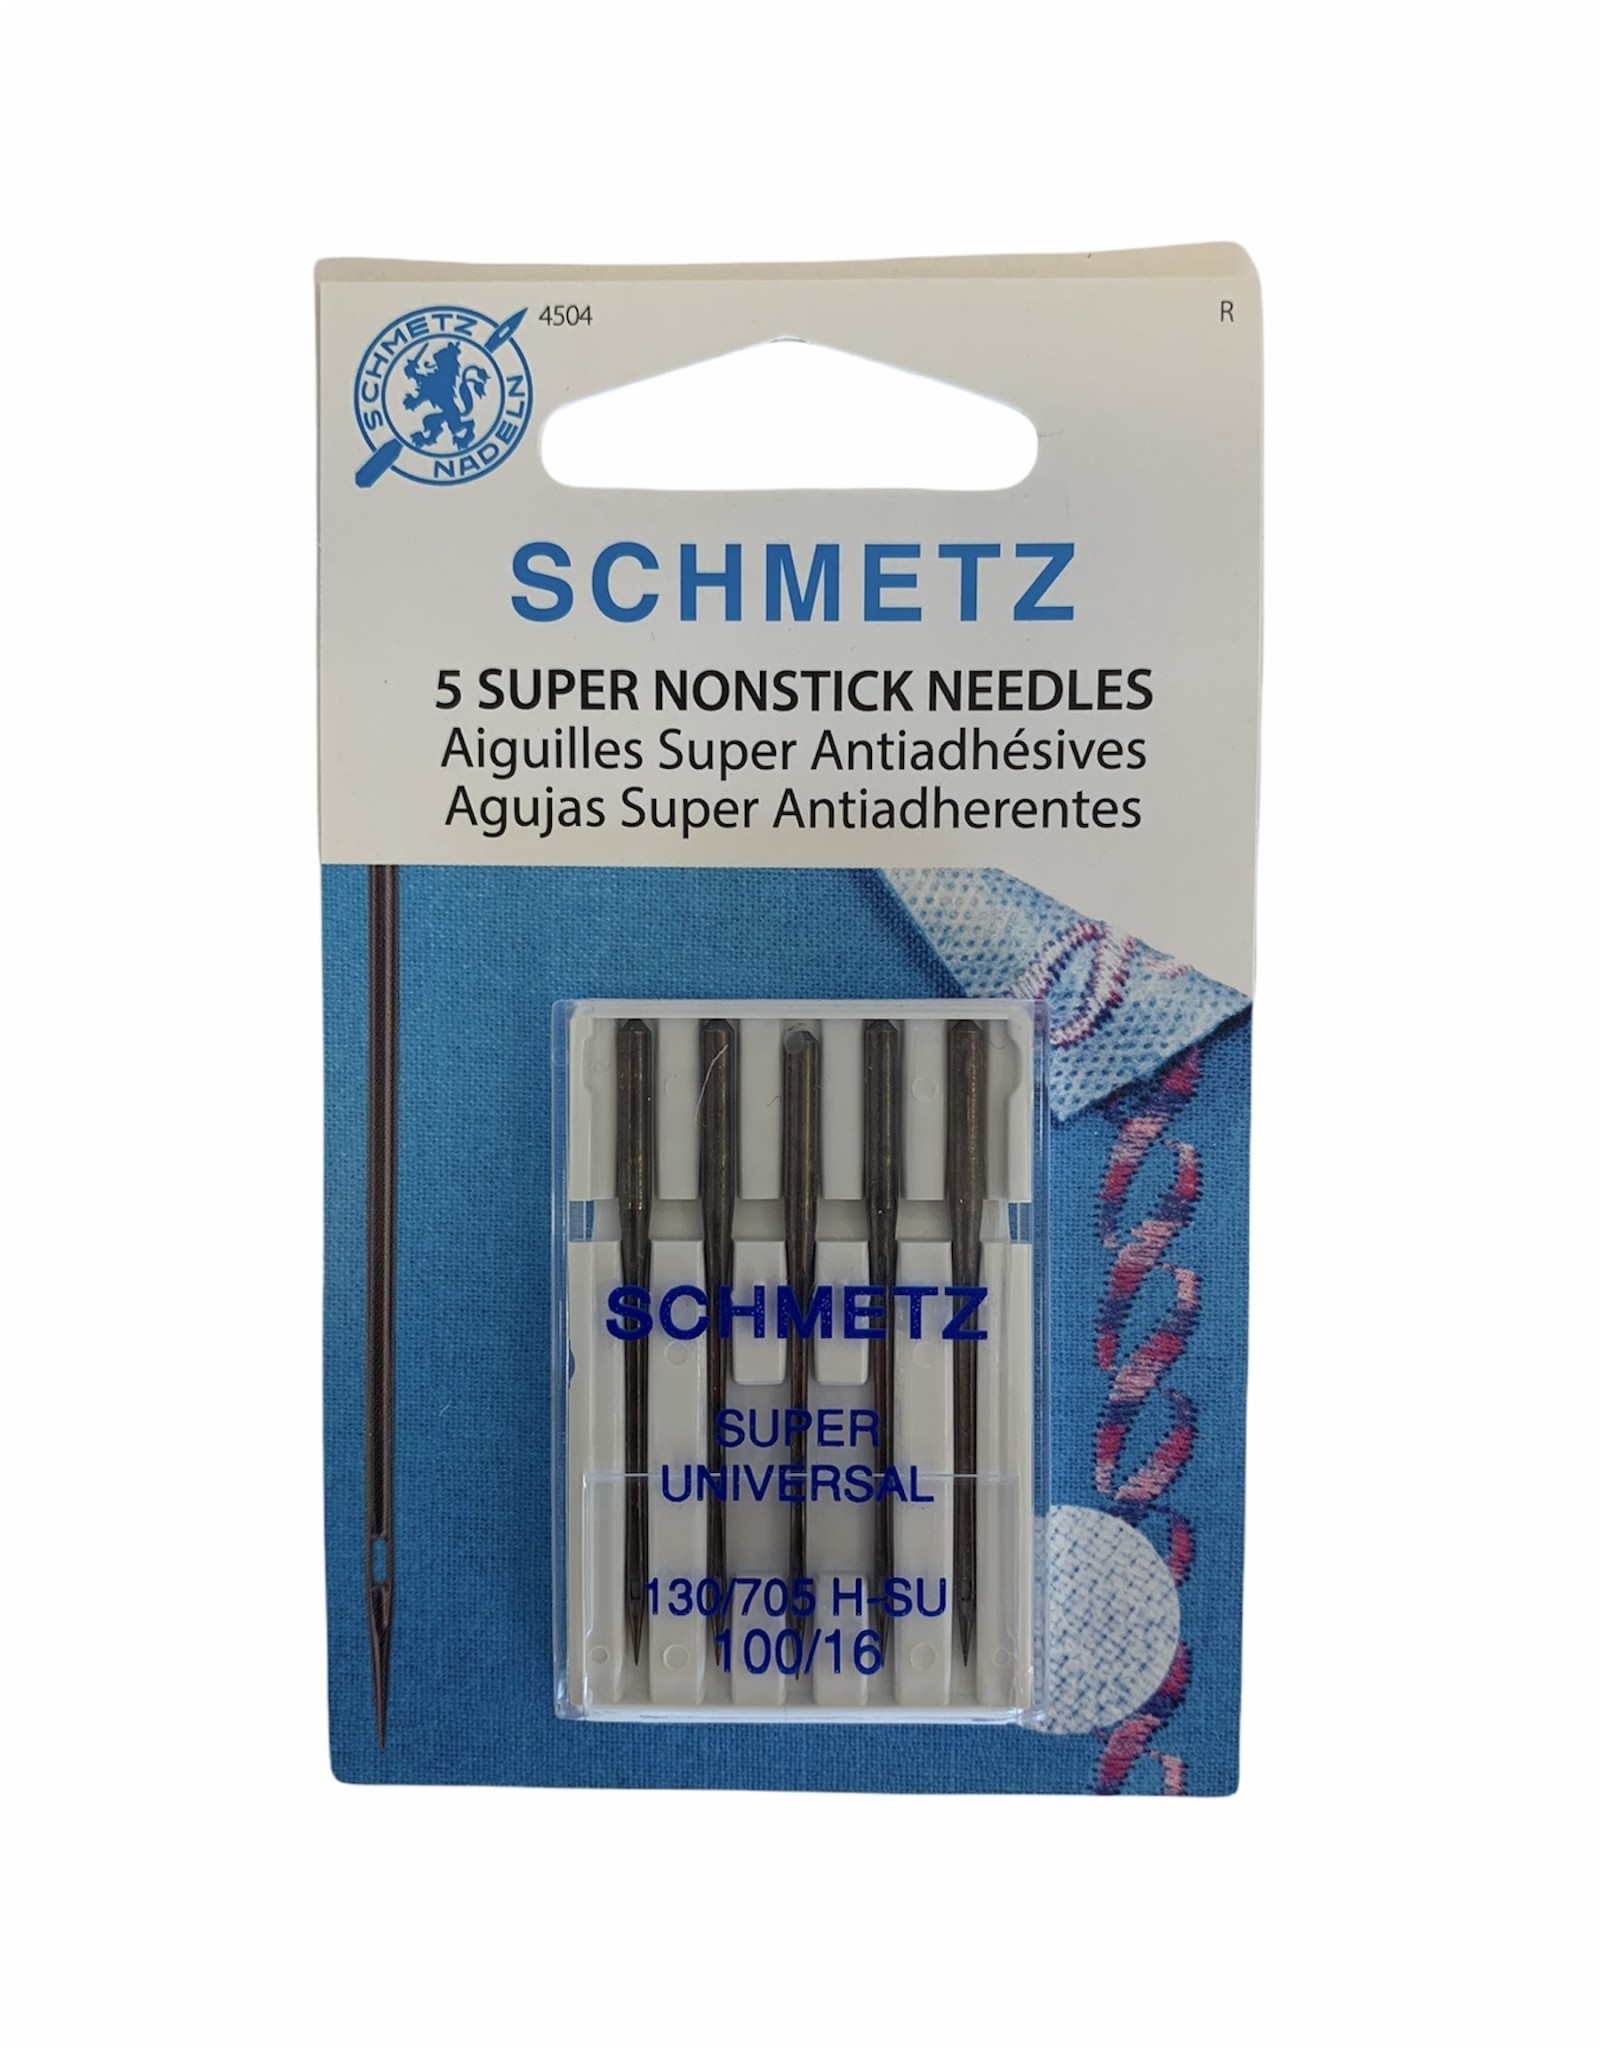 Schmetz Non-Stick Needles 100/16, 130/705 H-SU